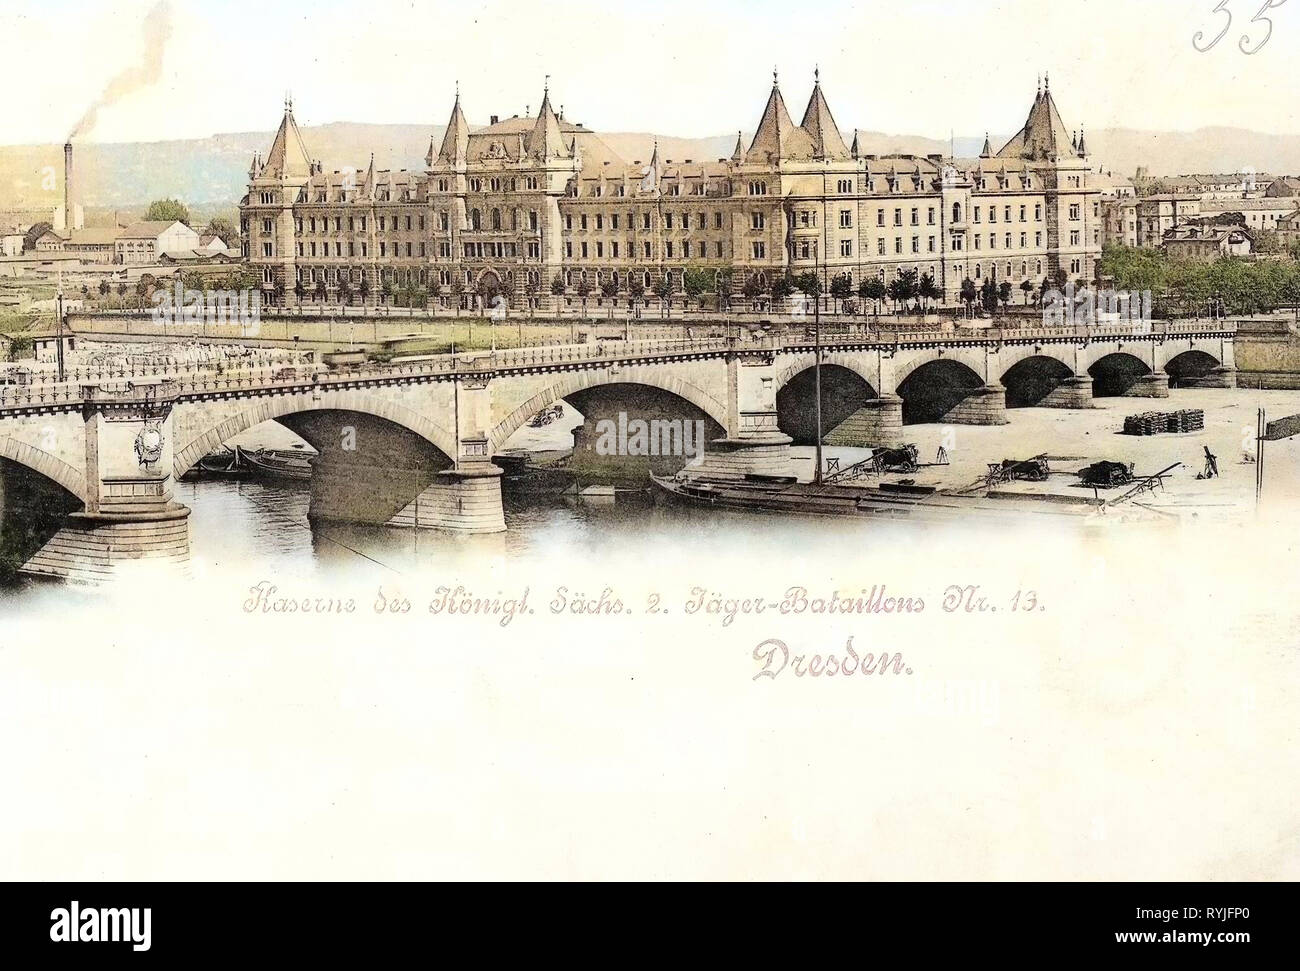 Albertbrücke (Dresden), Barges of Germany, 2. Königlich Sächsisches Jäger-Bataillon Nr. 13, Jägerkaserne (Dresden), 1898, Dresden, Jägerkaserne Stock Photo